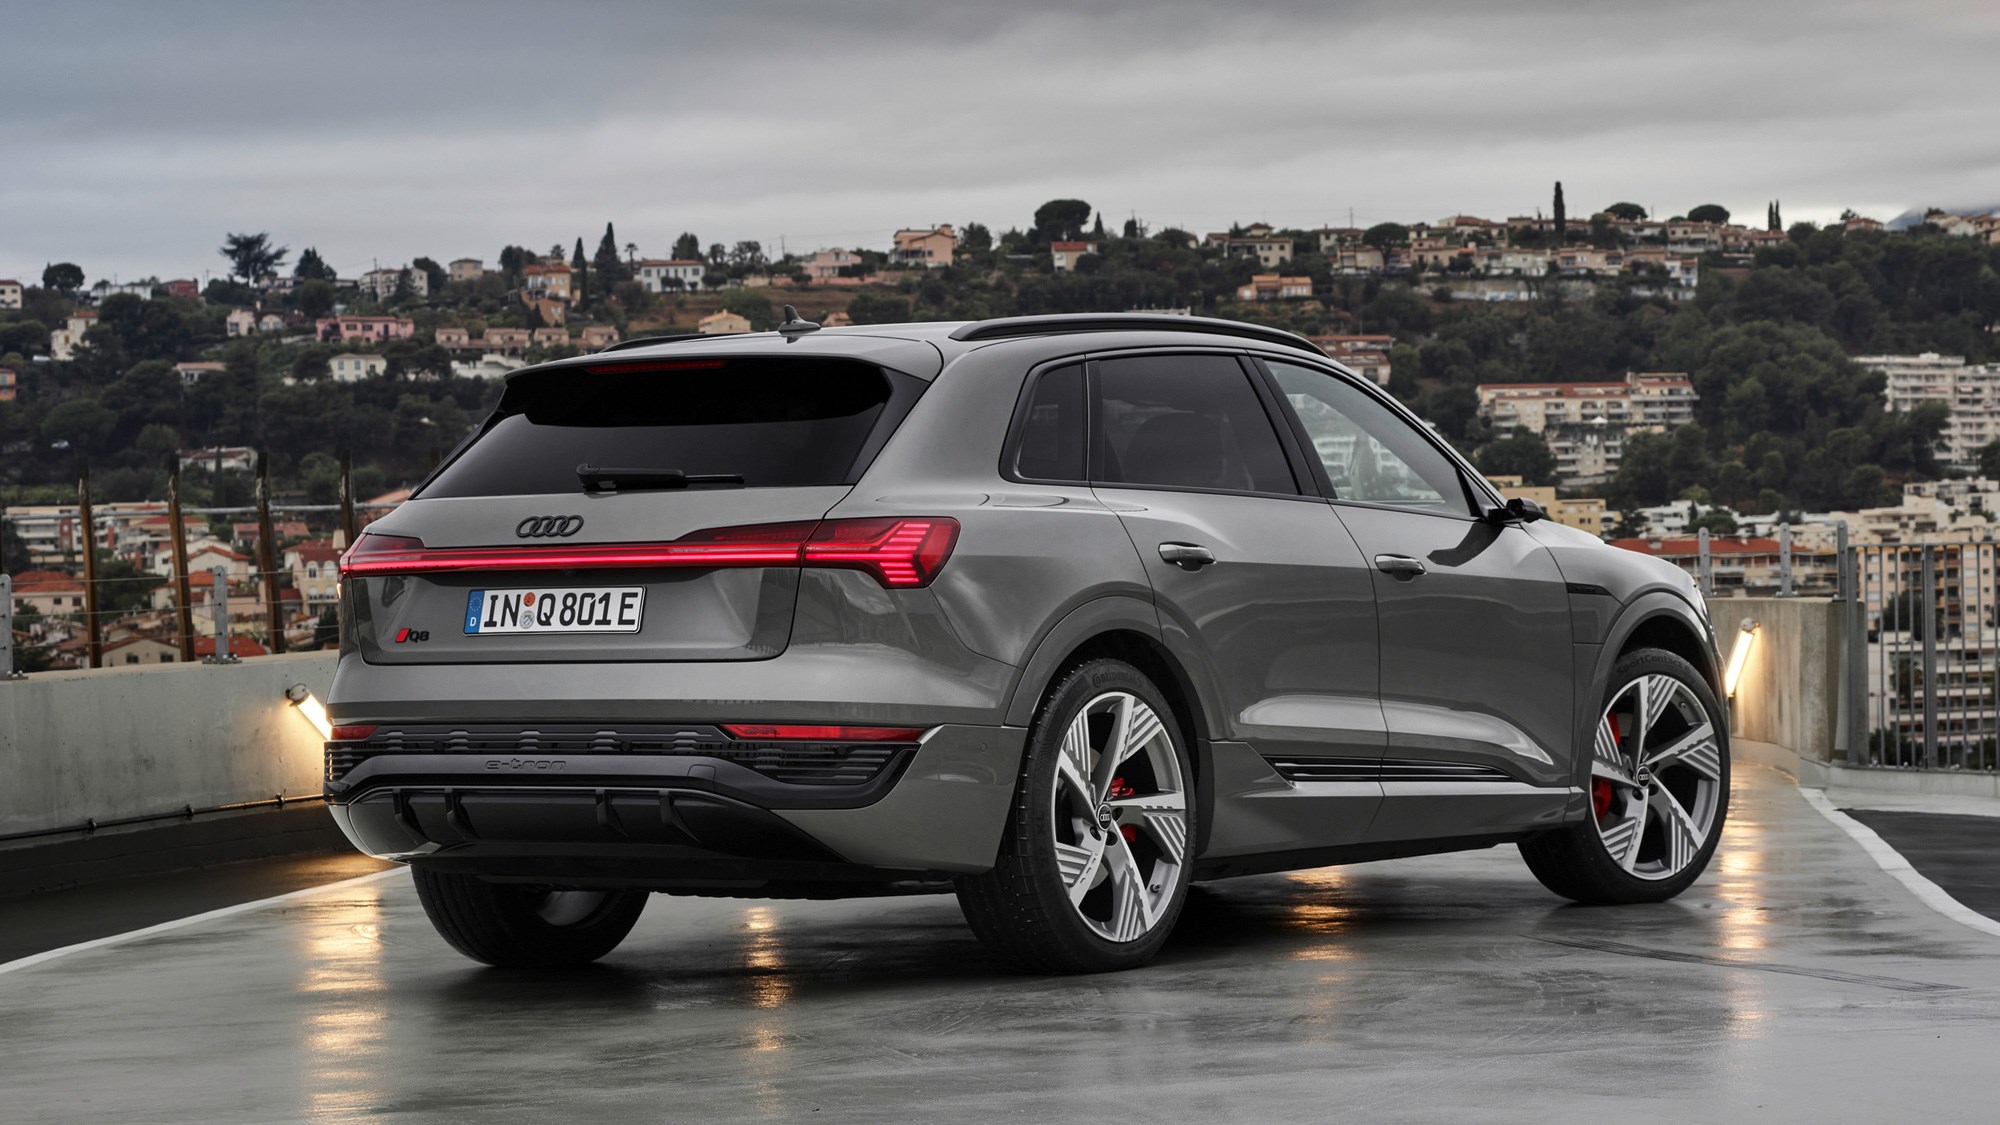  Audi Q8 Electric 2023 Release Date